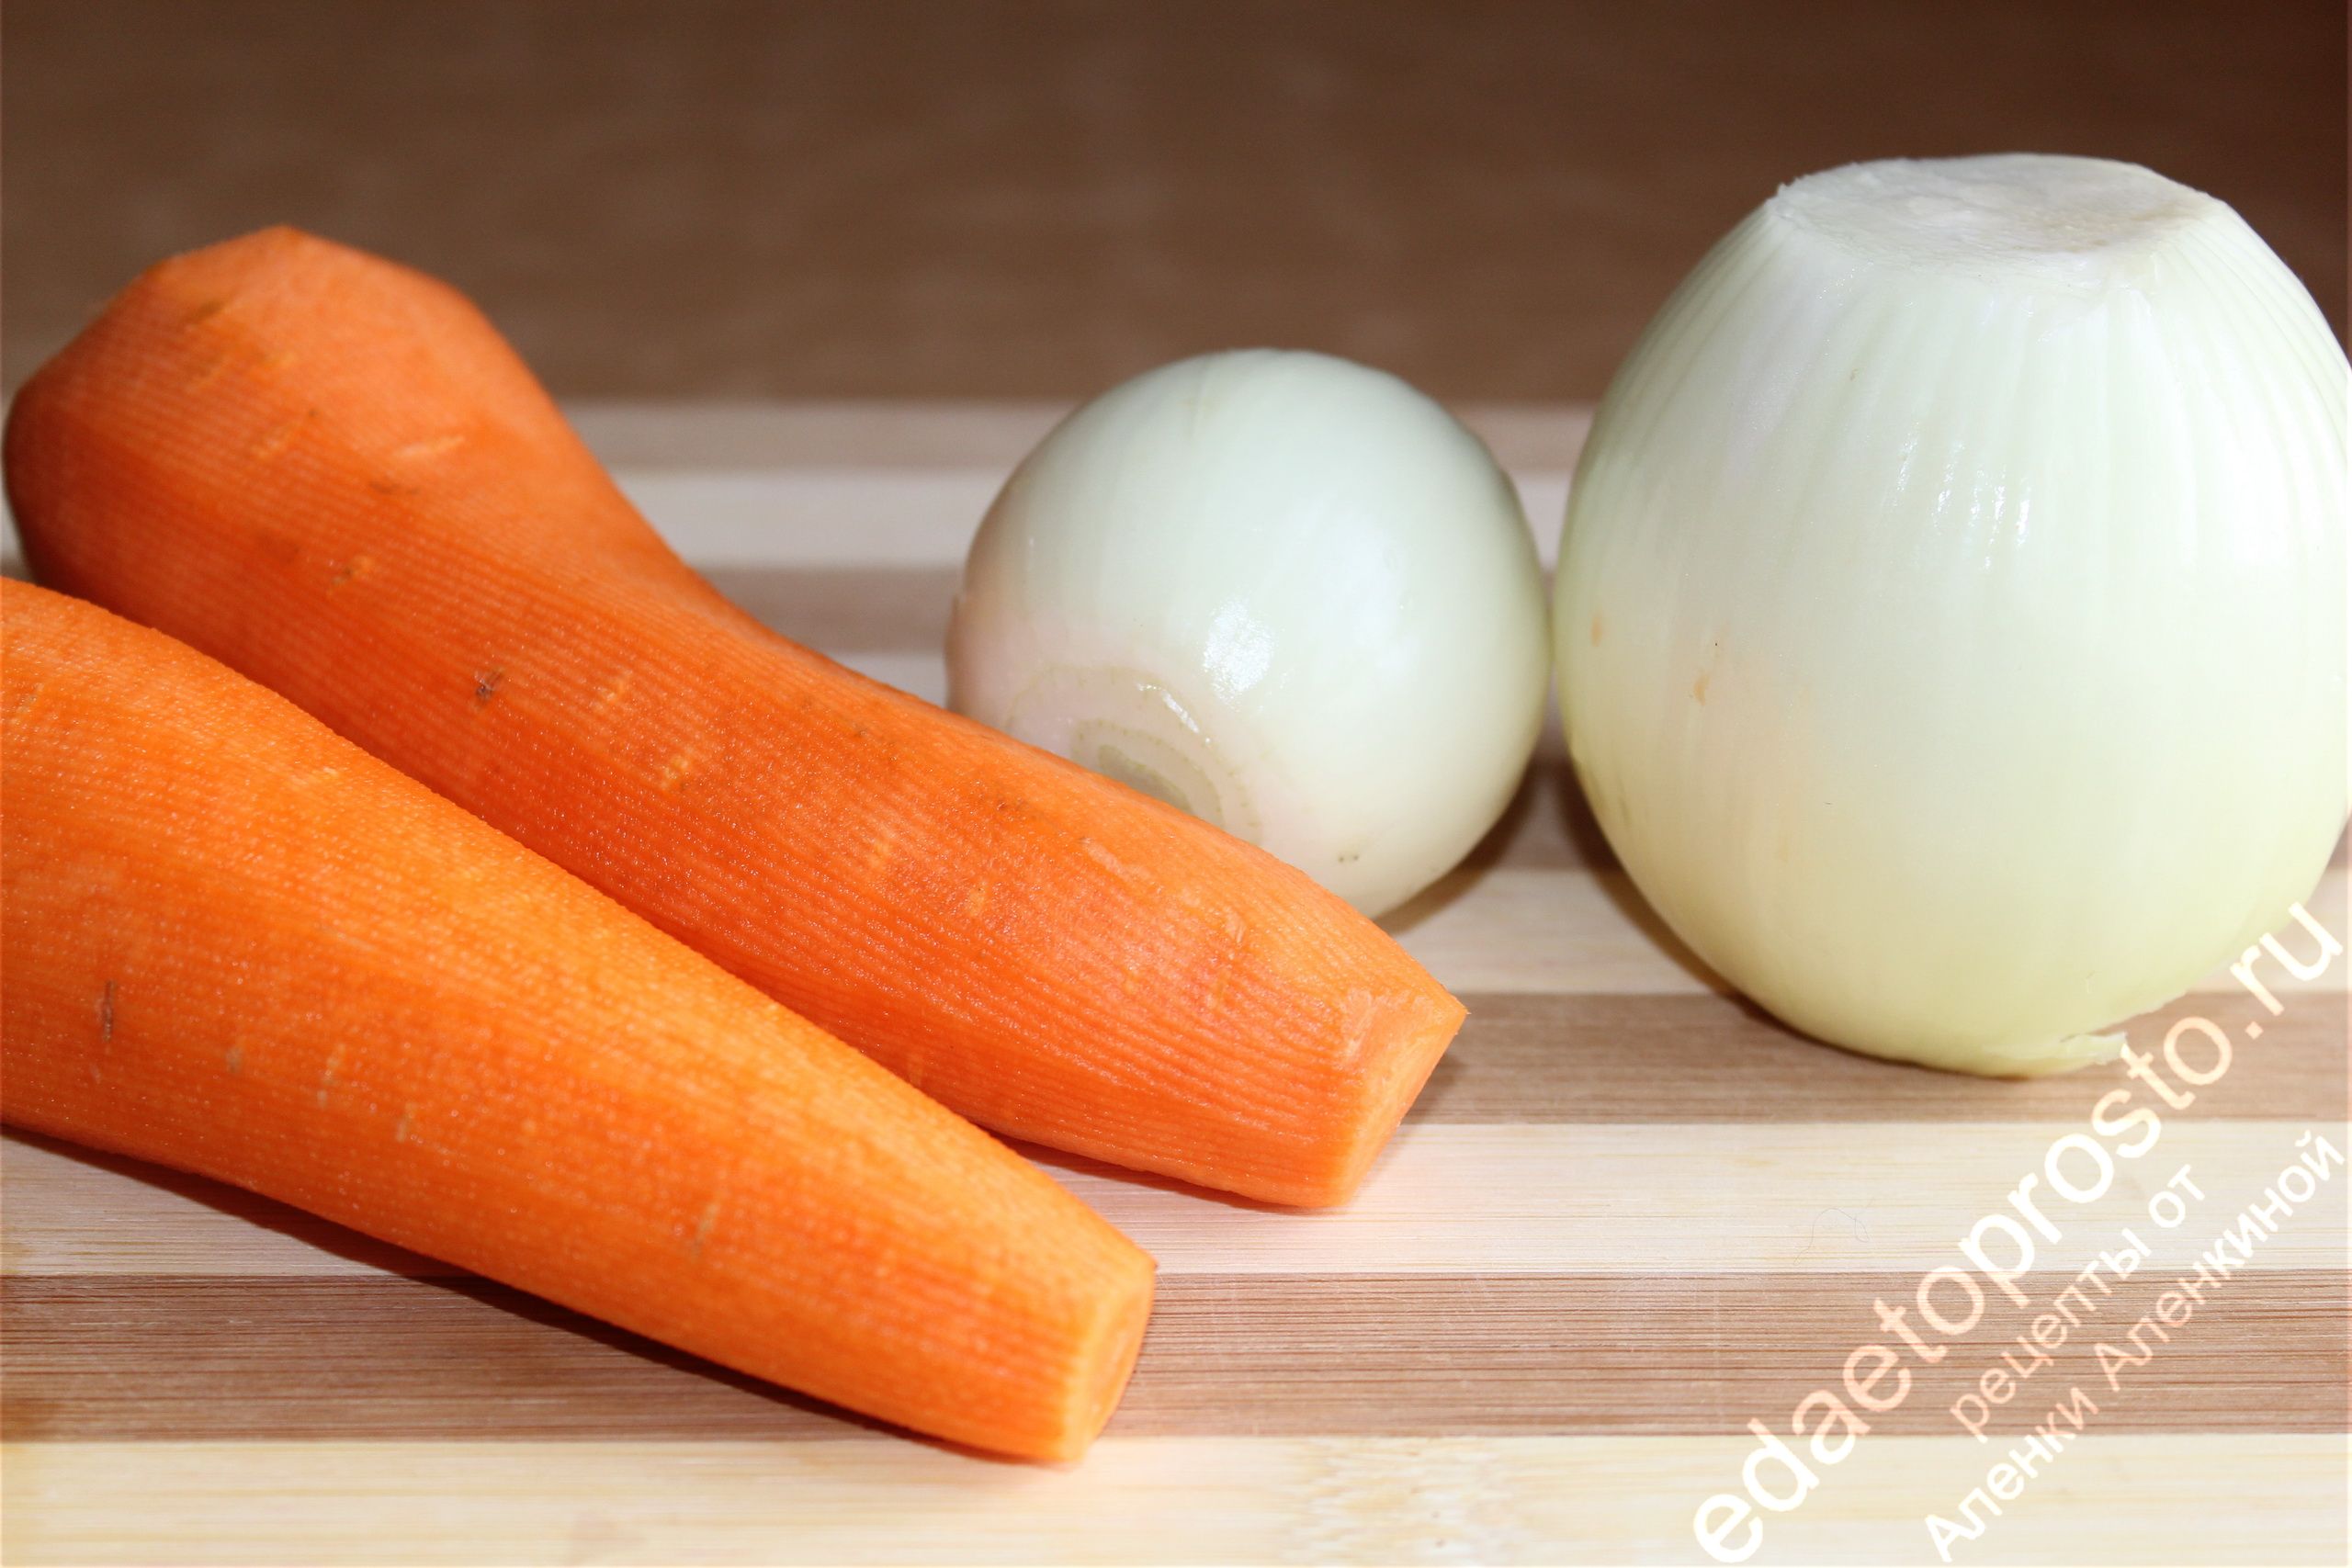 очищенные лук и морковь фото крупным планом